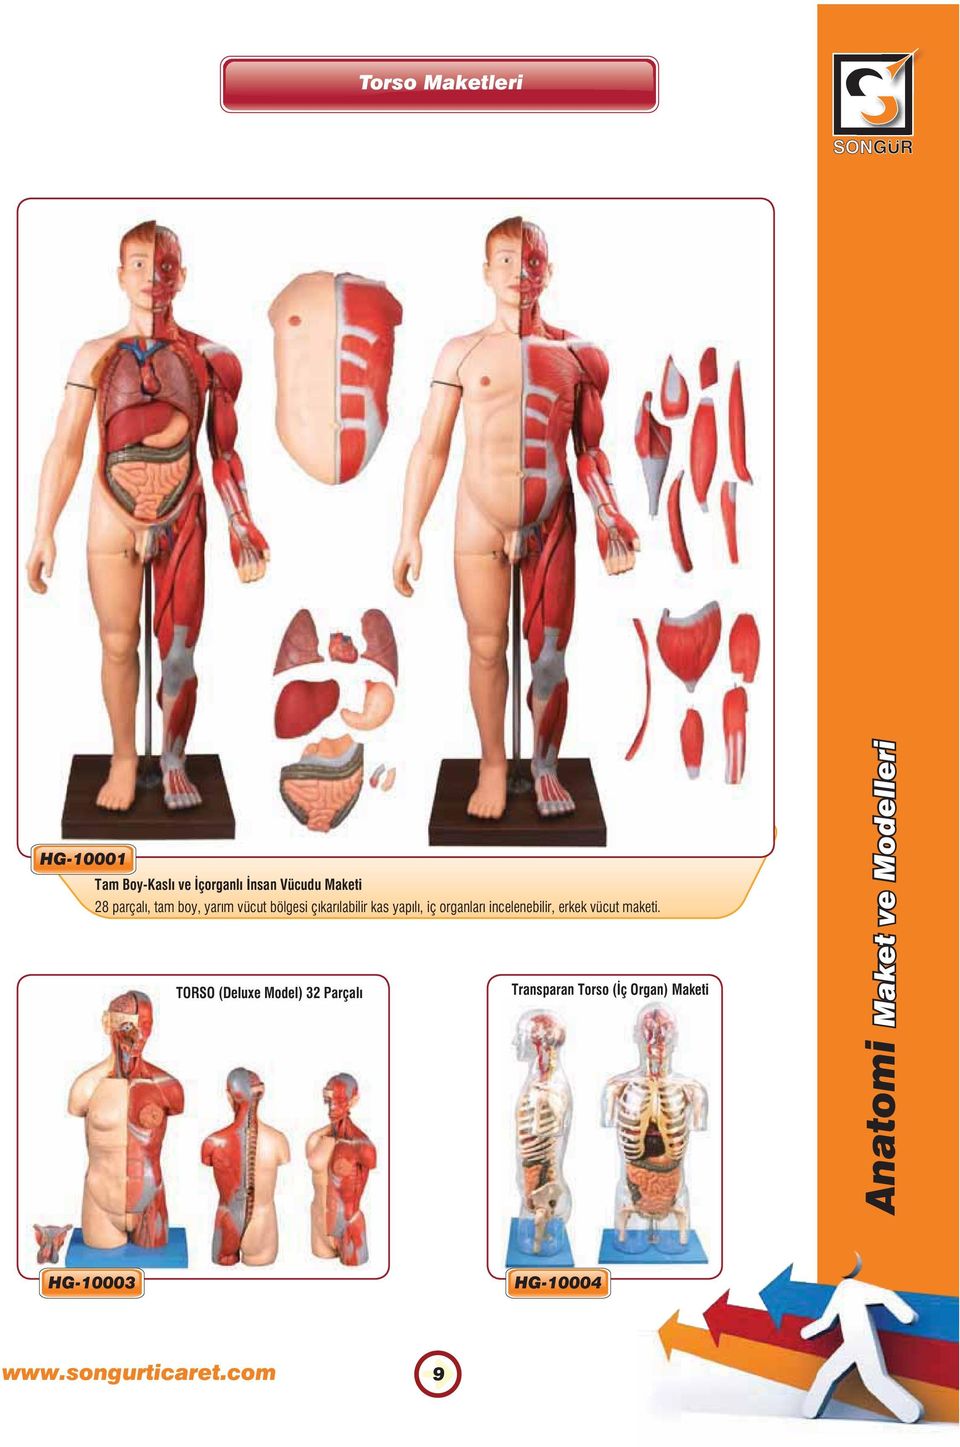 yapılı, iç organları incelenebilir, erkek vücut maketi.